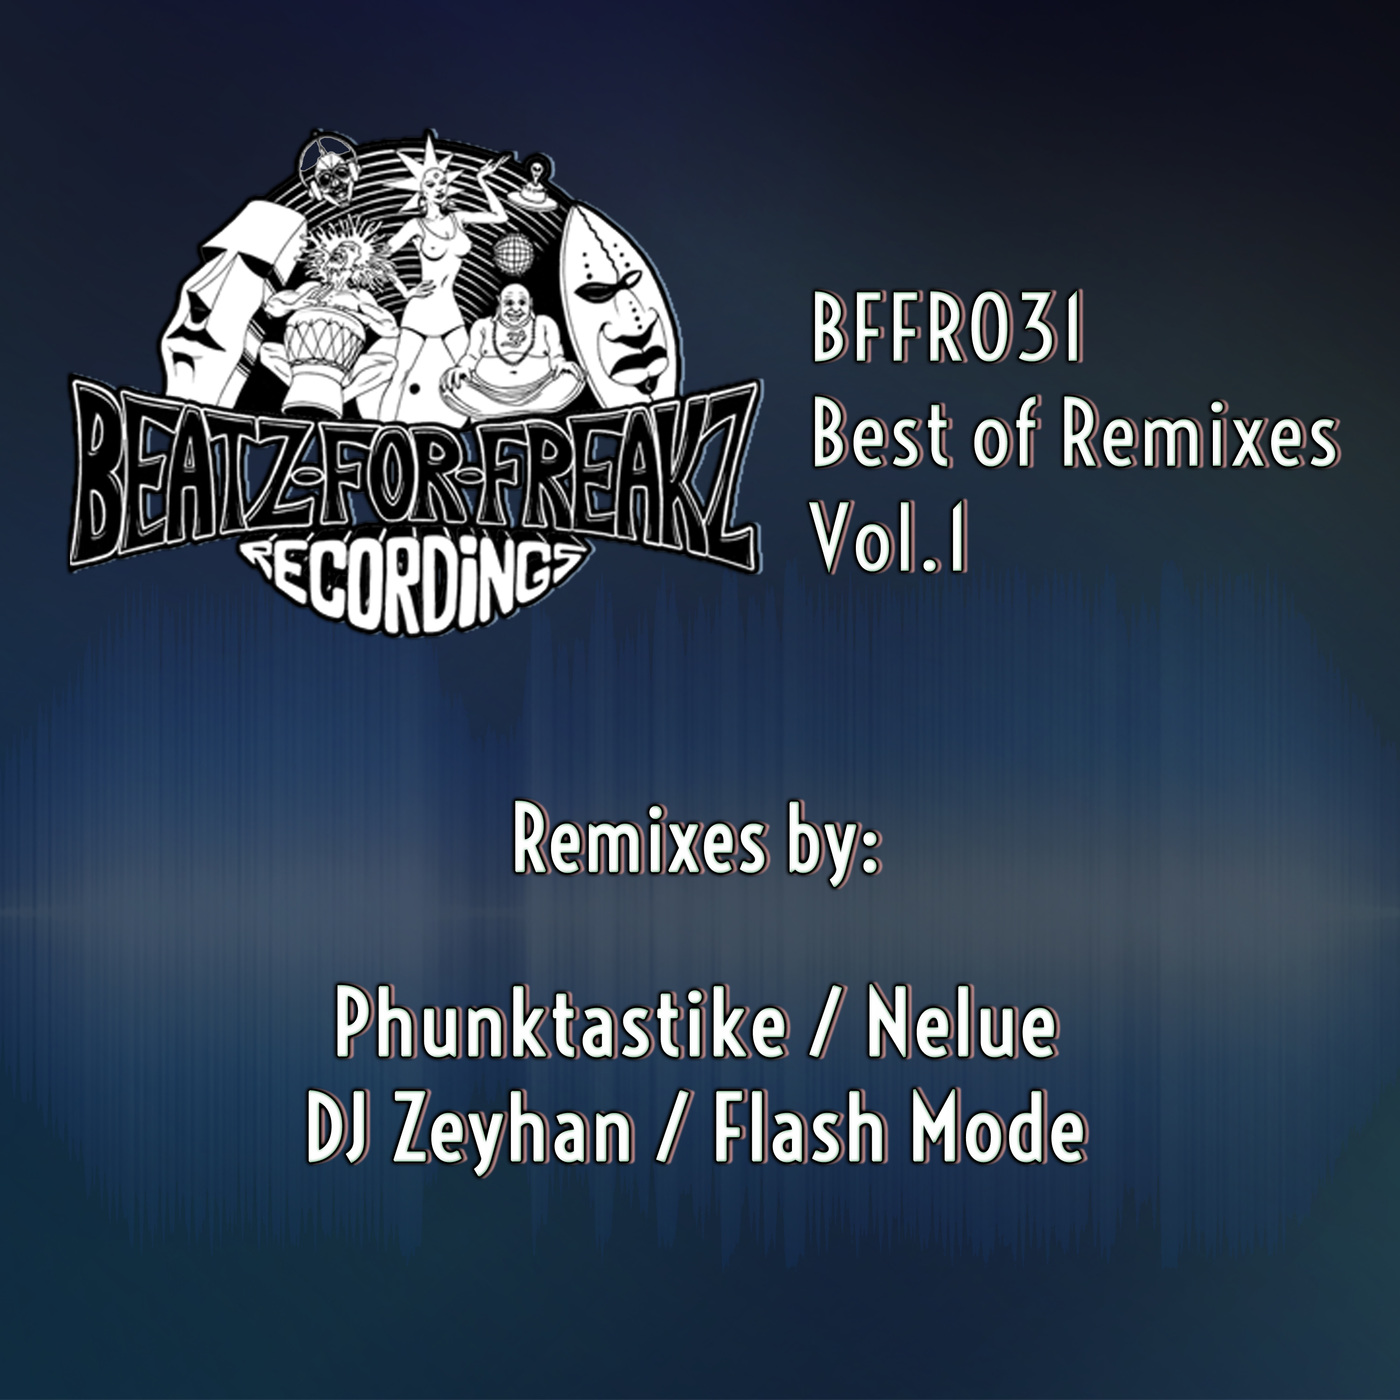 VA - Best of Remixes, Vol. 1 / Beatz for Freakz Recordings